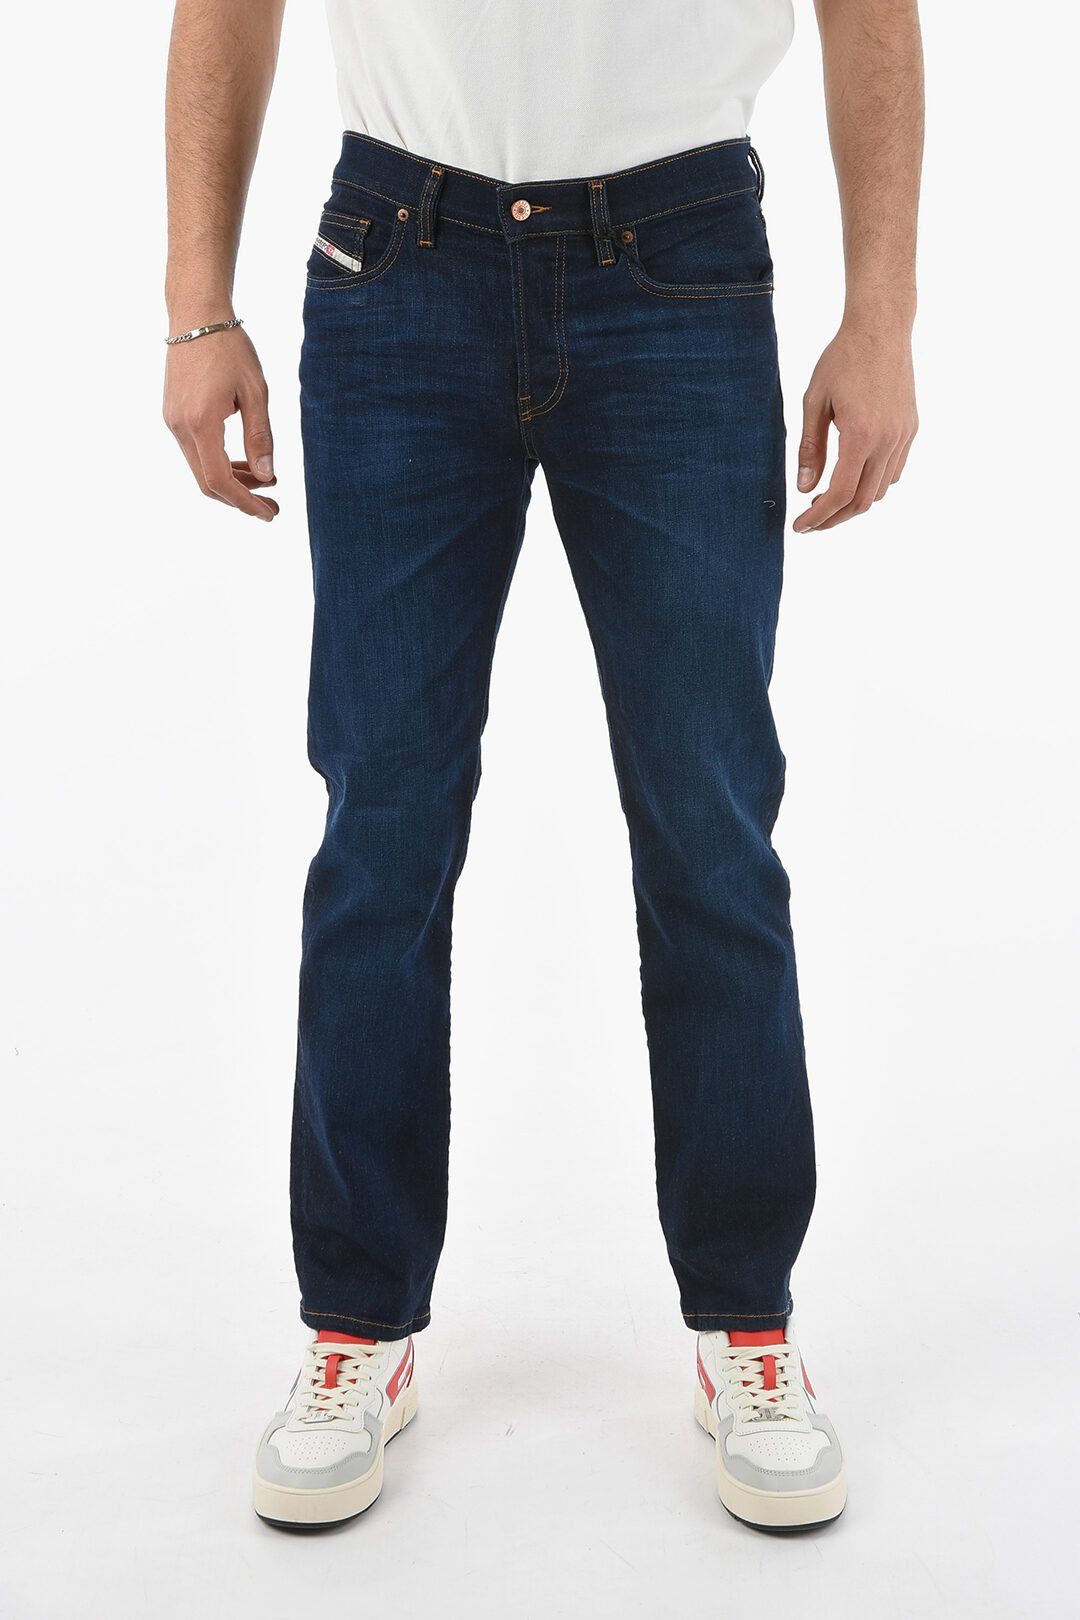 0GDAO mit Stretch-Anteil Diesel Style, Straight-Jeans D-MIHTRY Herren Jeans 5-Pocket Diesel